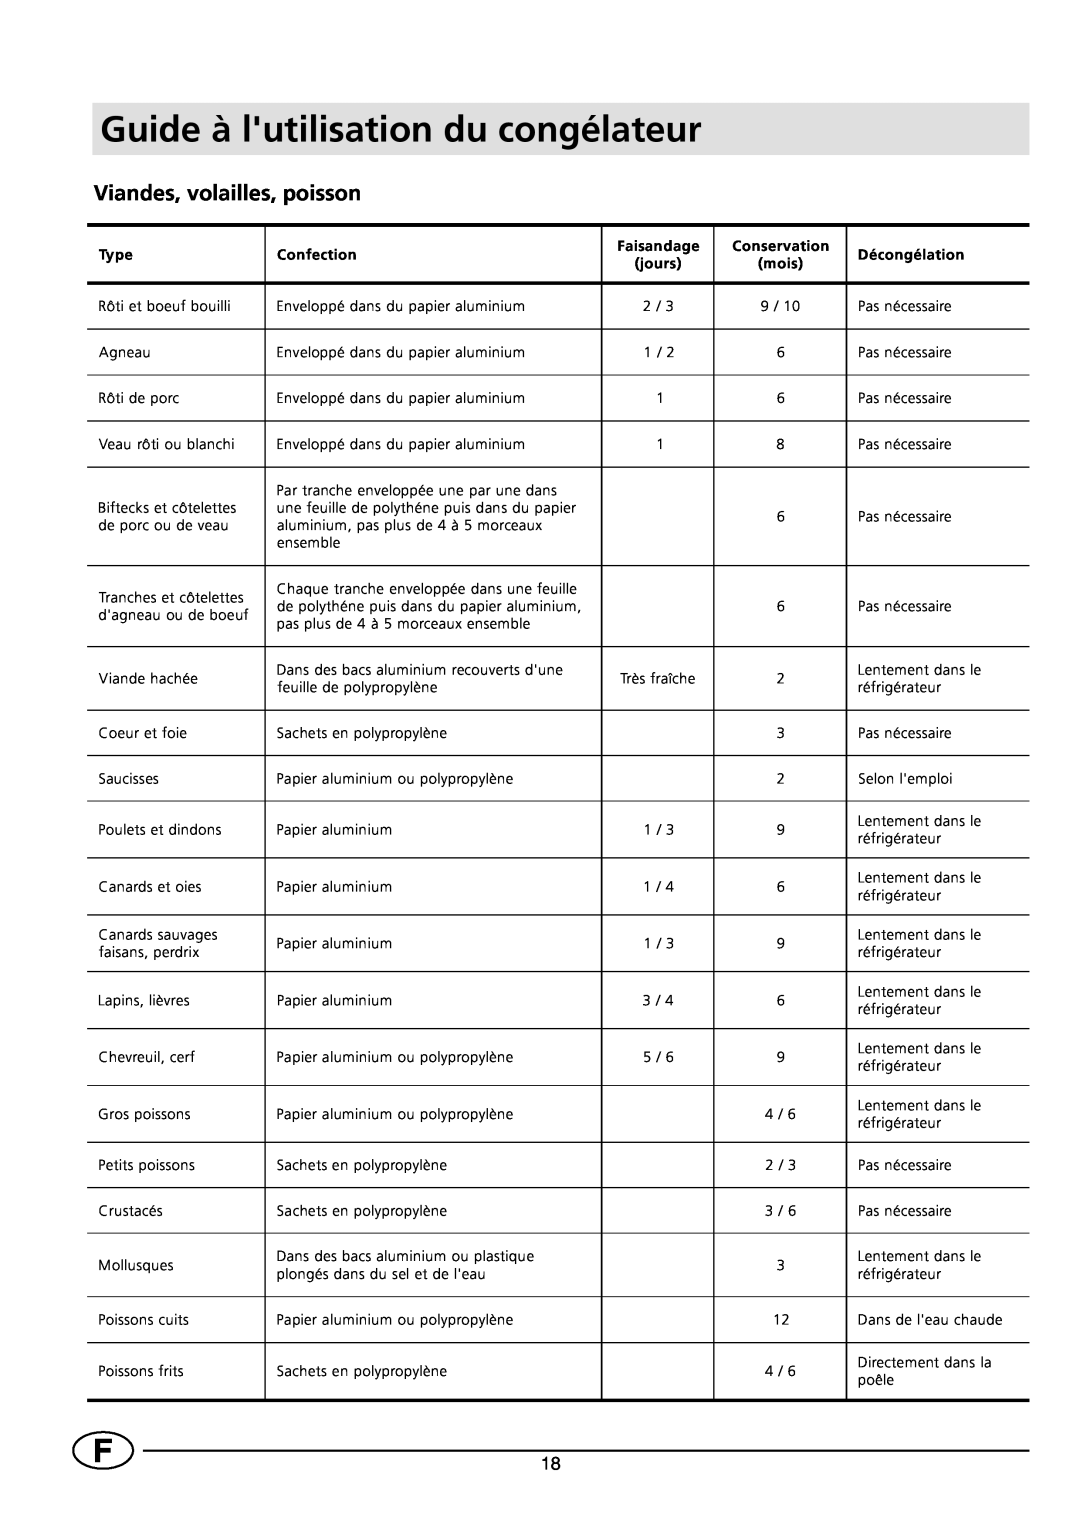 Smeg VR120B Guide à lutilisation du congélateur, Viandes, volailles, poisson, Type, Confection, Faisandage, Conservation 